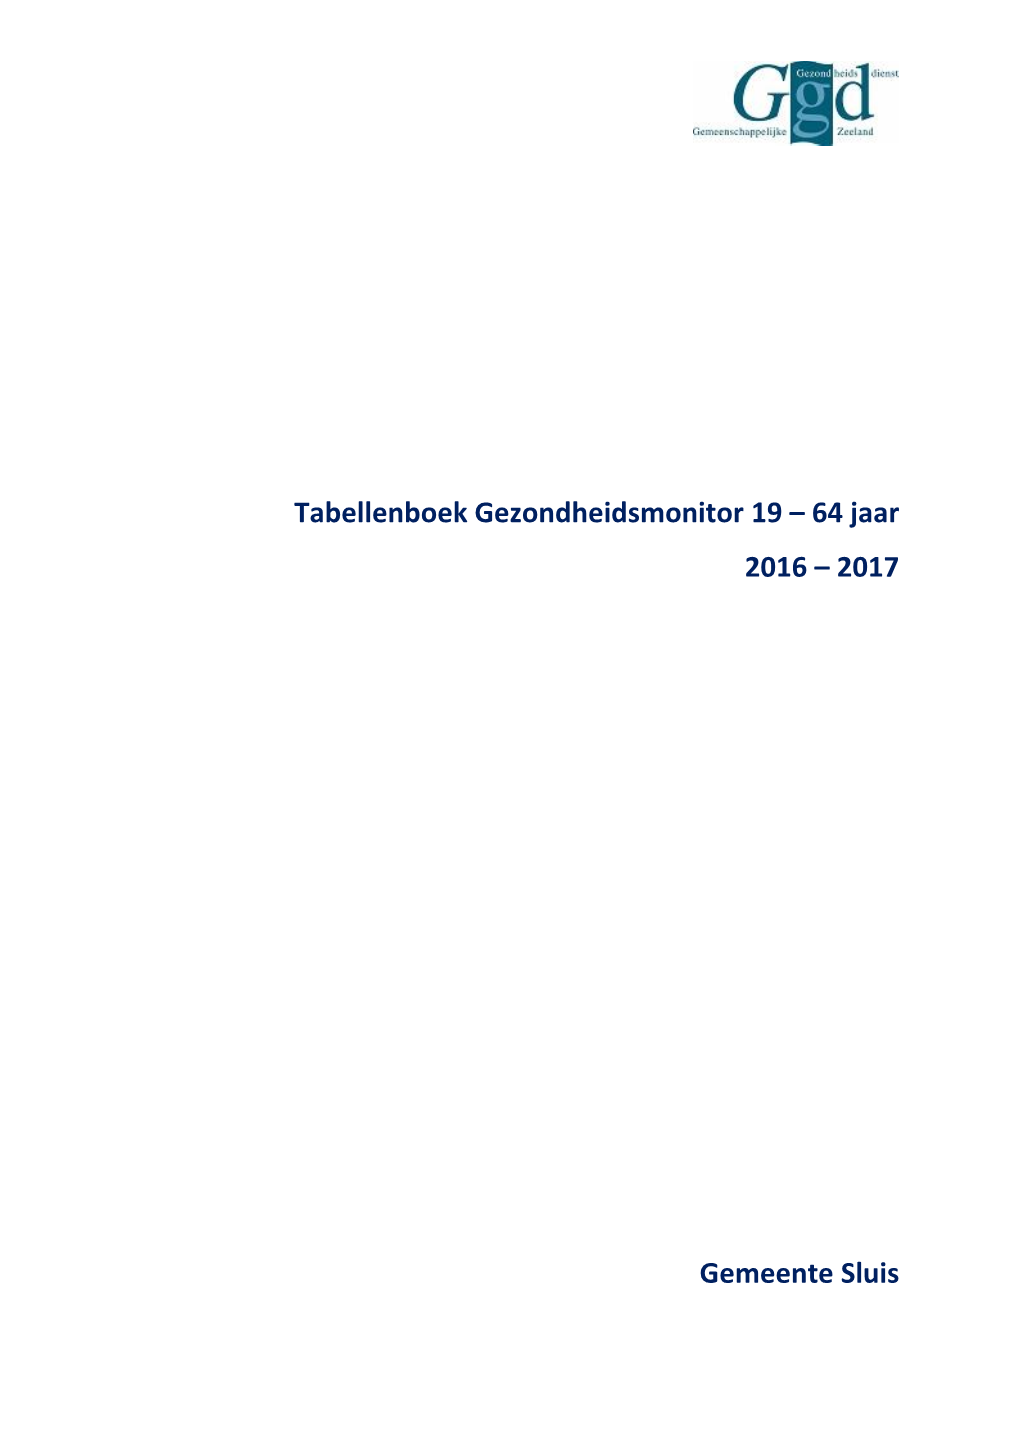 Tabellenboek Gezondheidsmonitor 19 – 64 Jaar 2016 – 2017